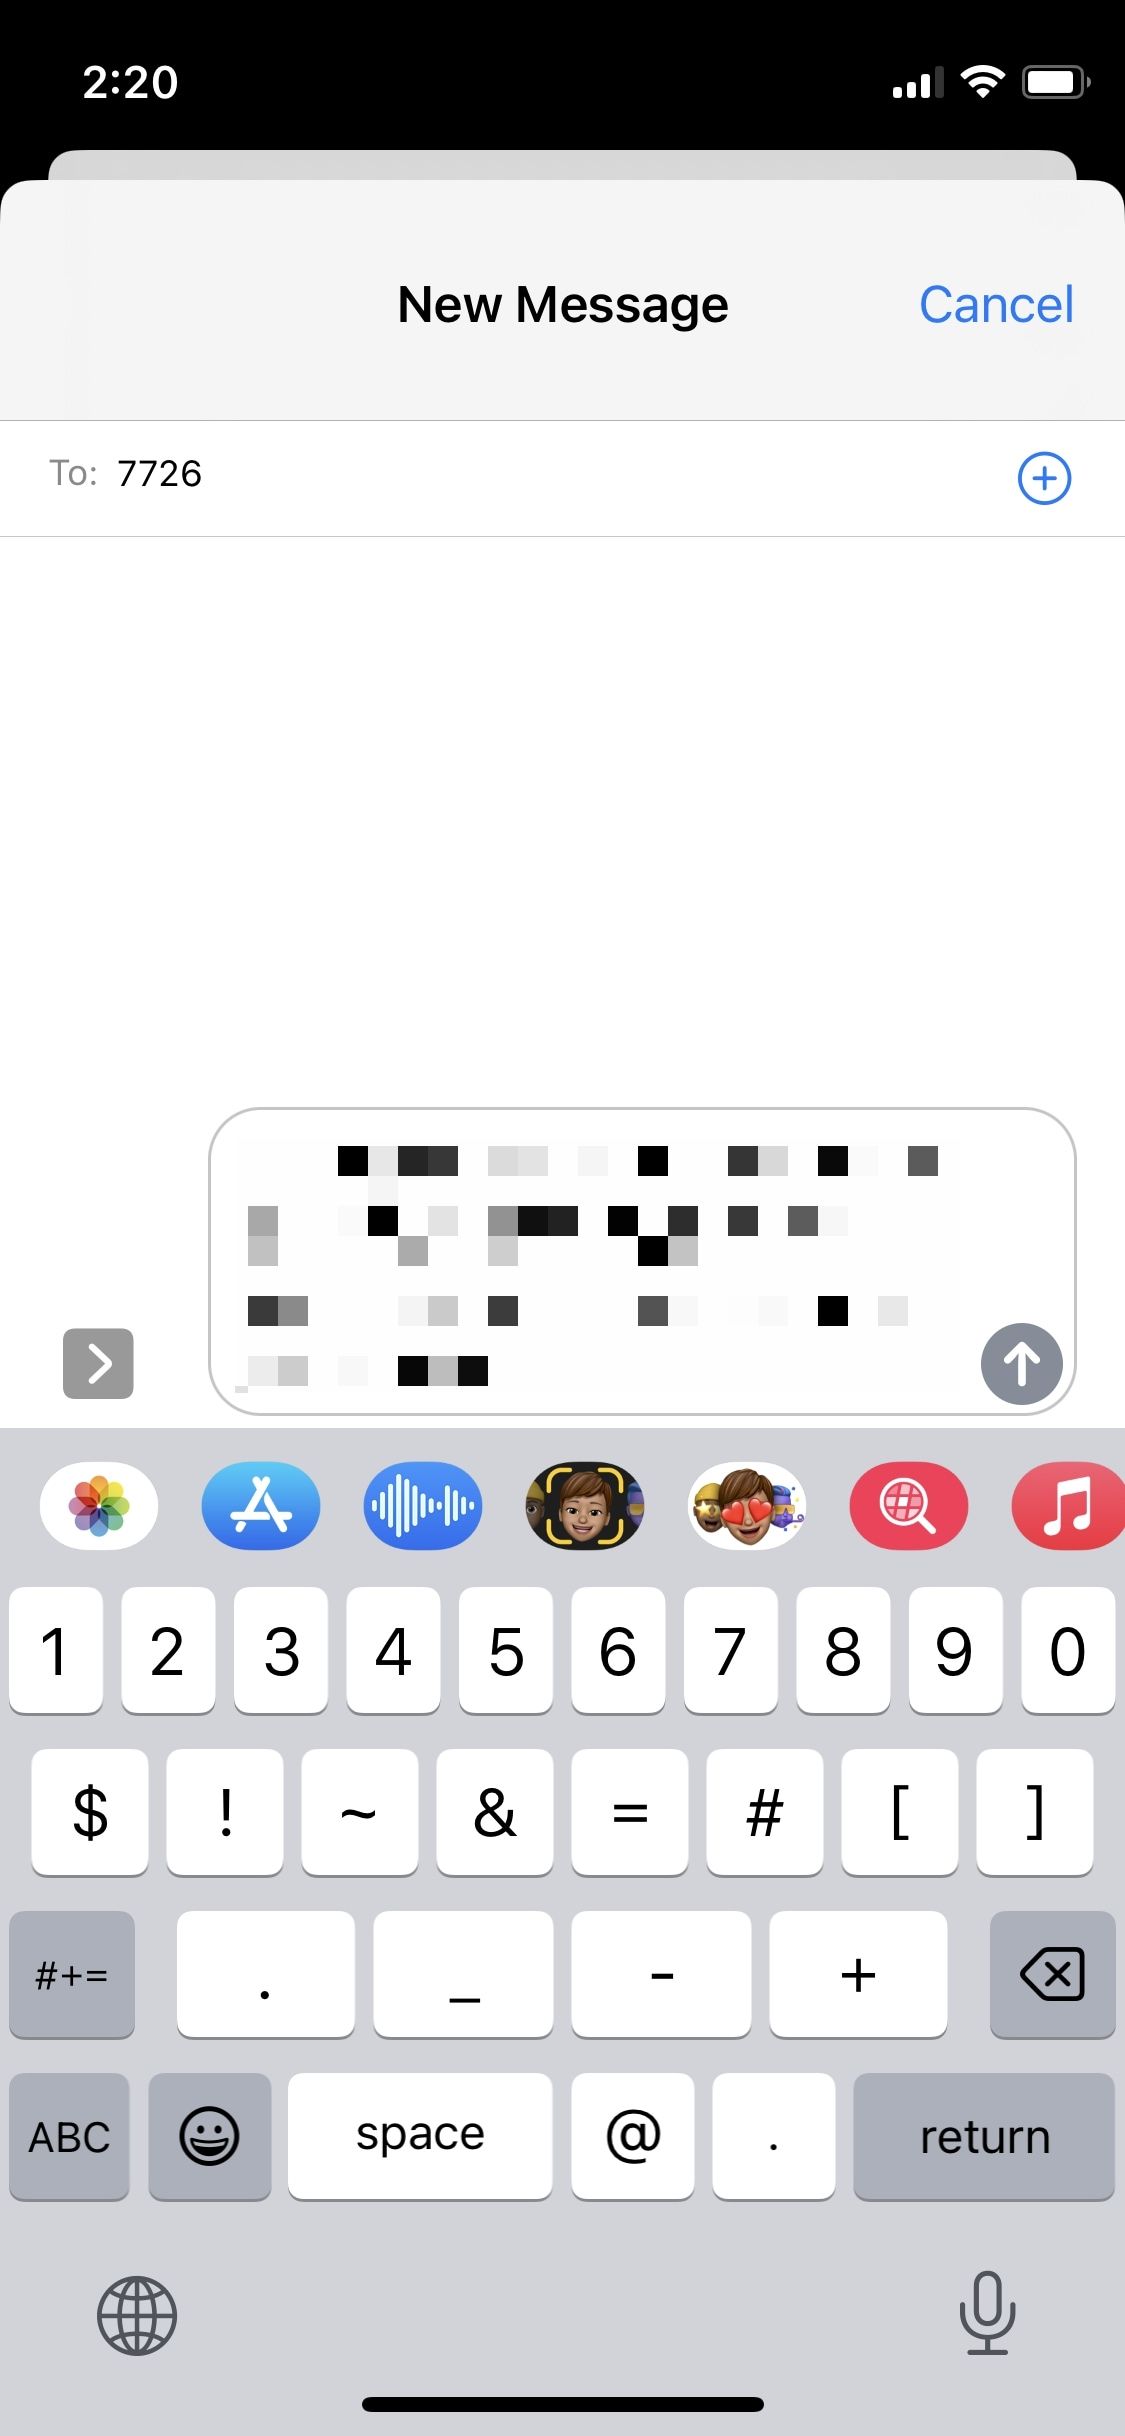 Captura de tela mostrando uma mensagem encaminhada em um bate-papo do iMessage, com a mensagem sendo enviada para o número 7726.